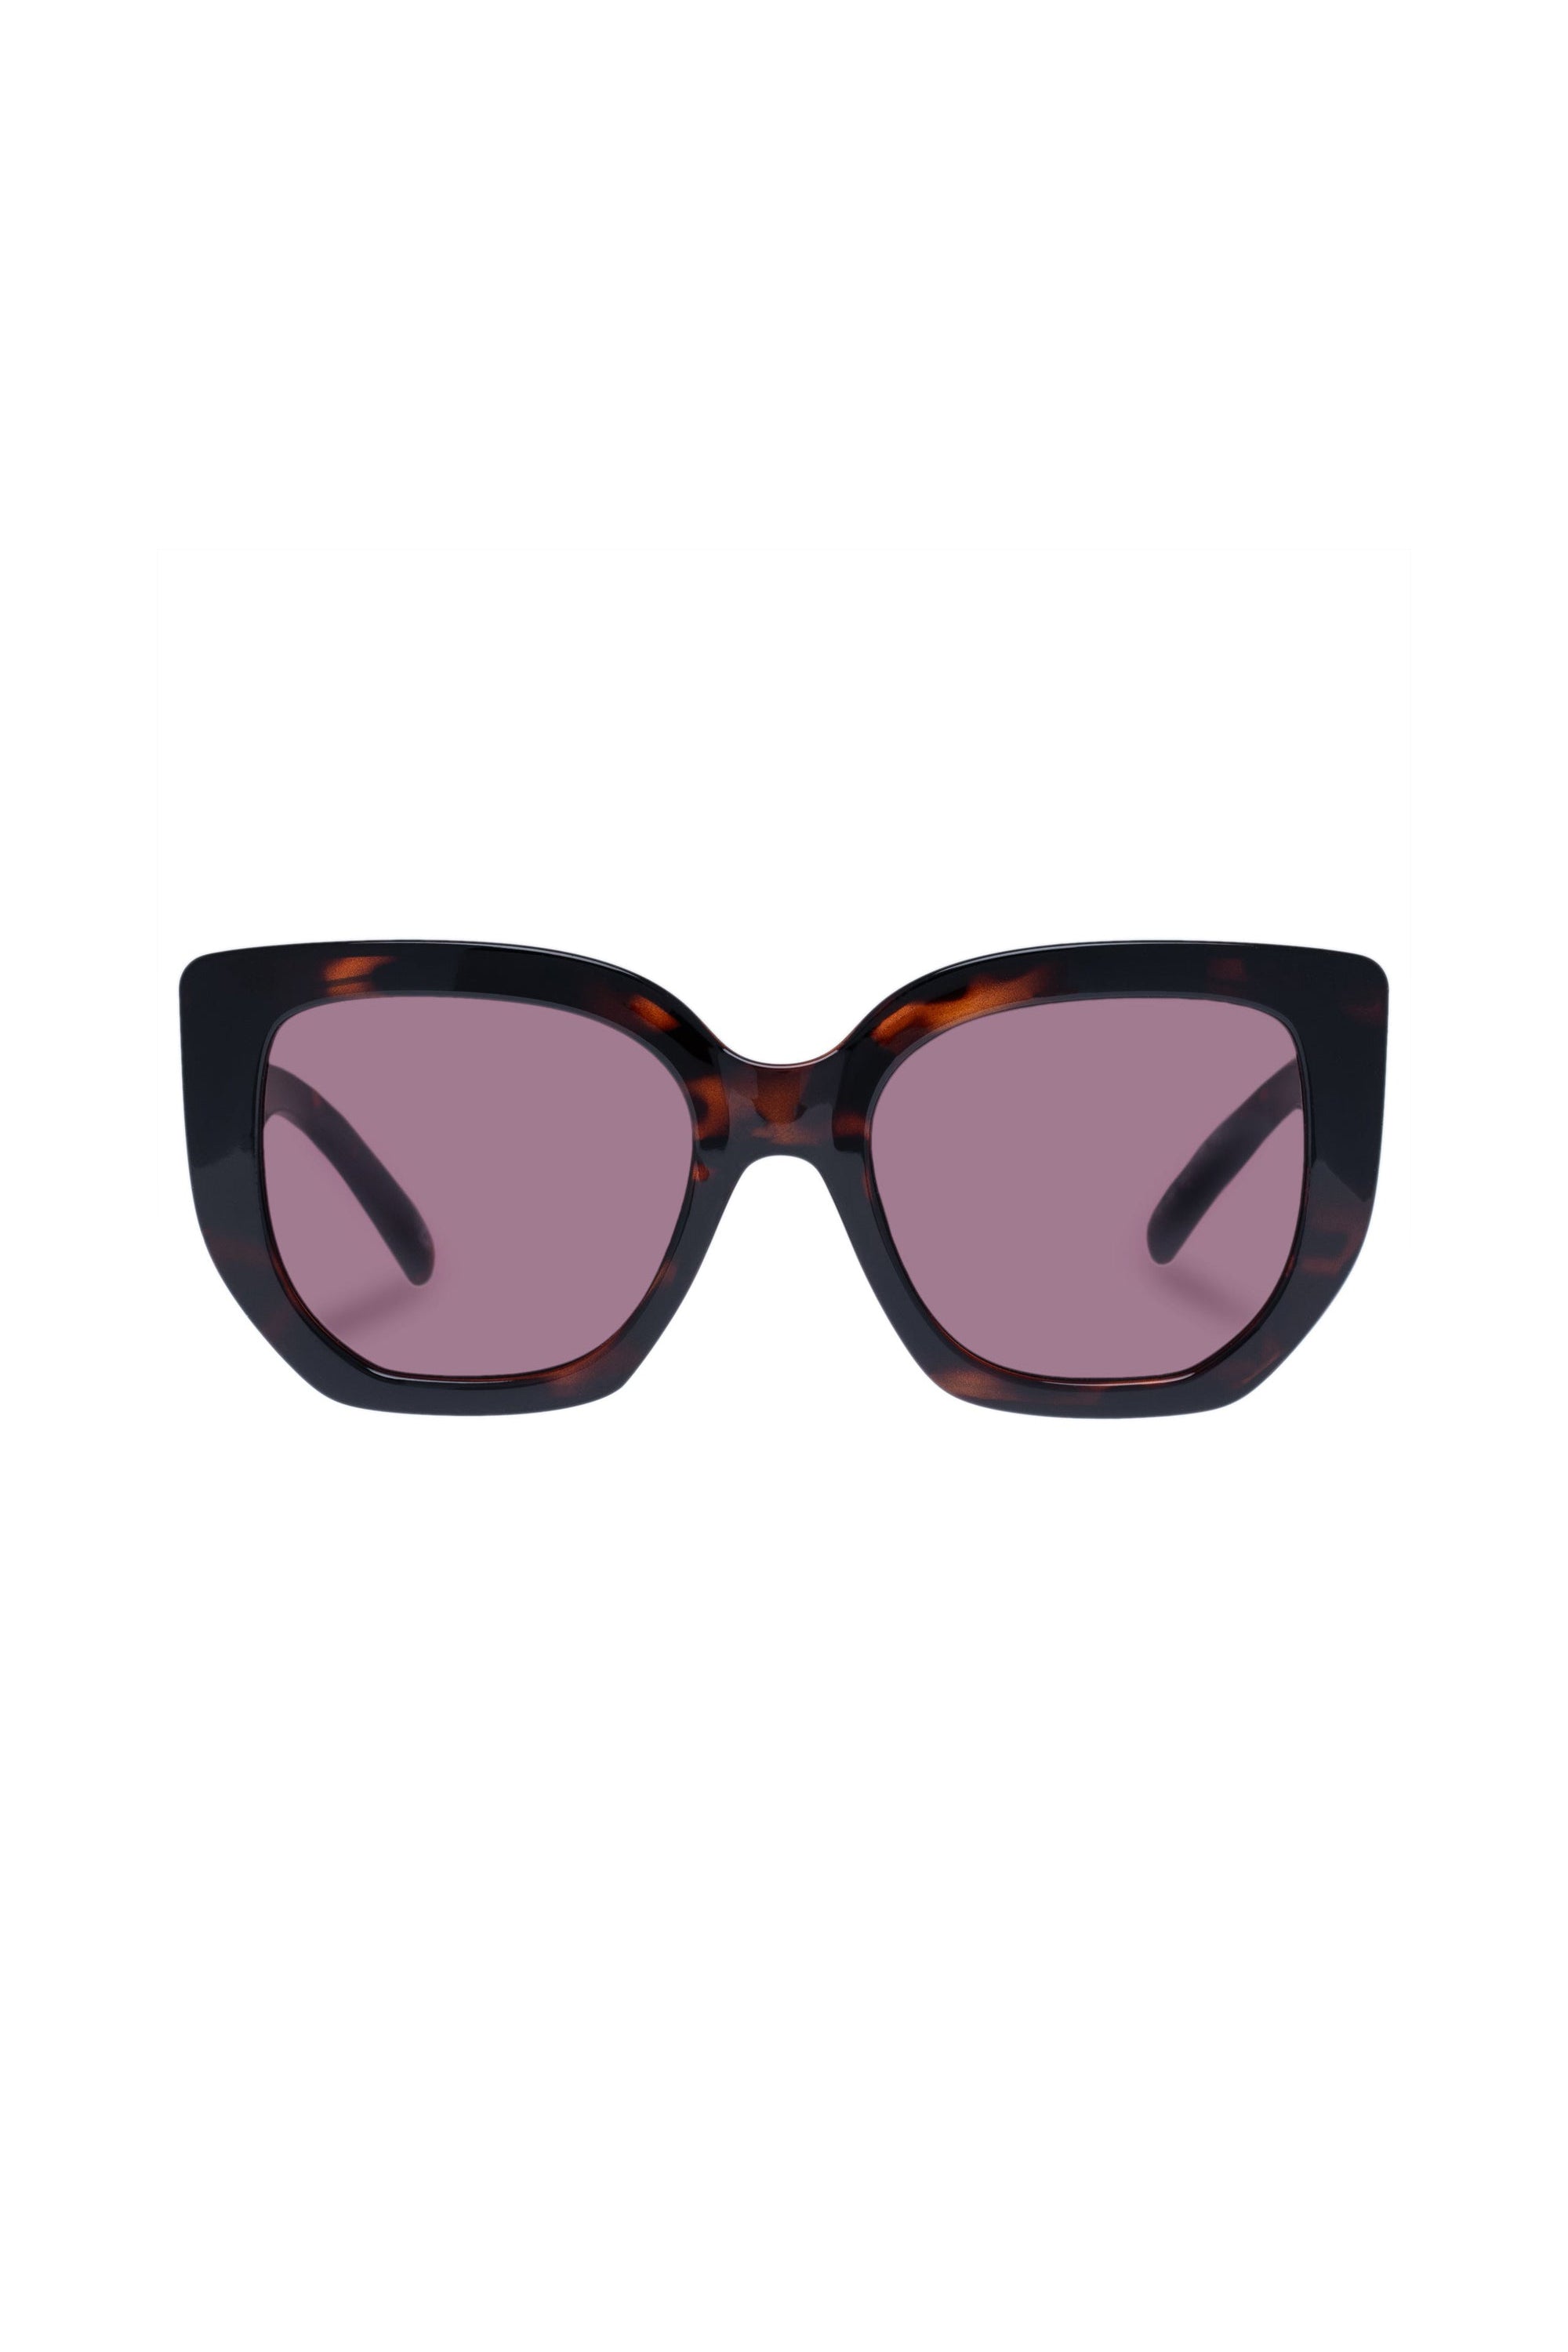 Euphoria Sunglasses - Super Dark Tort